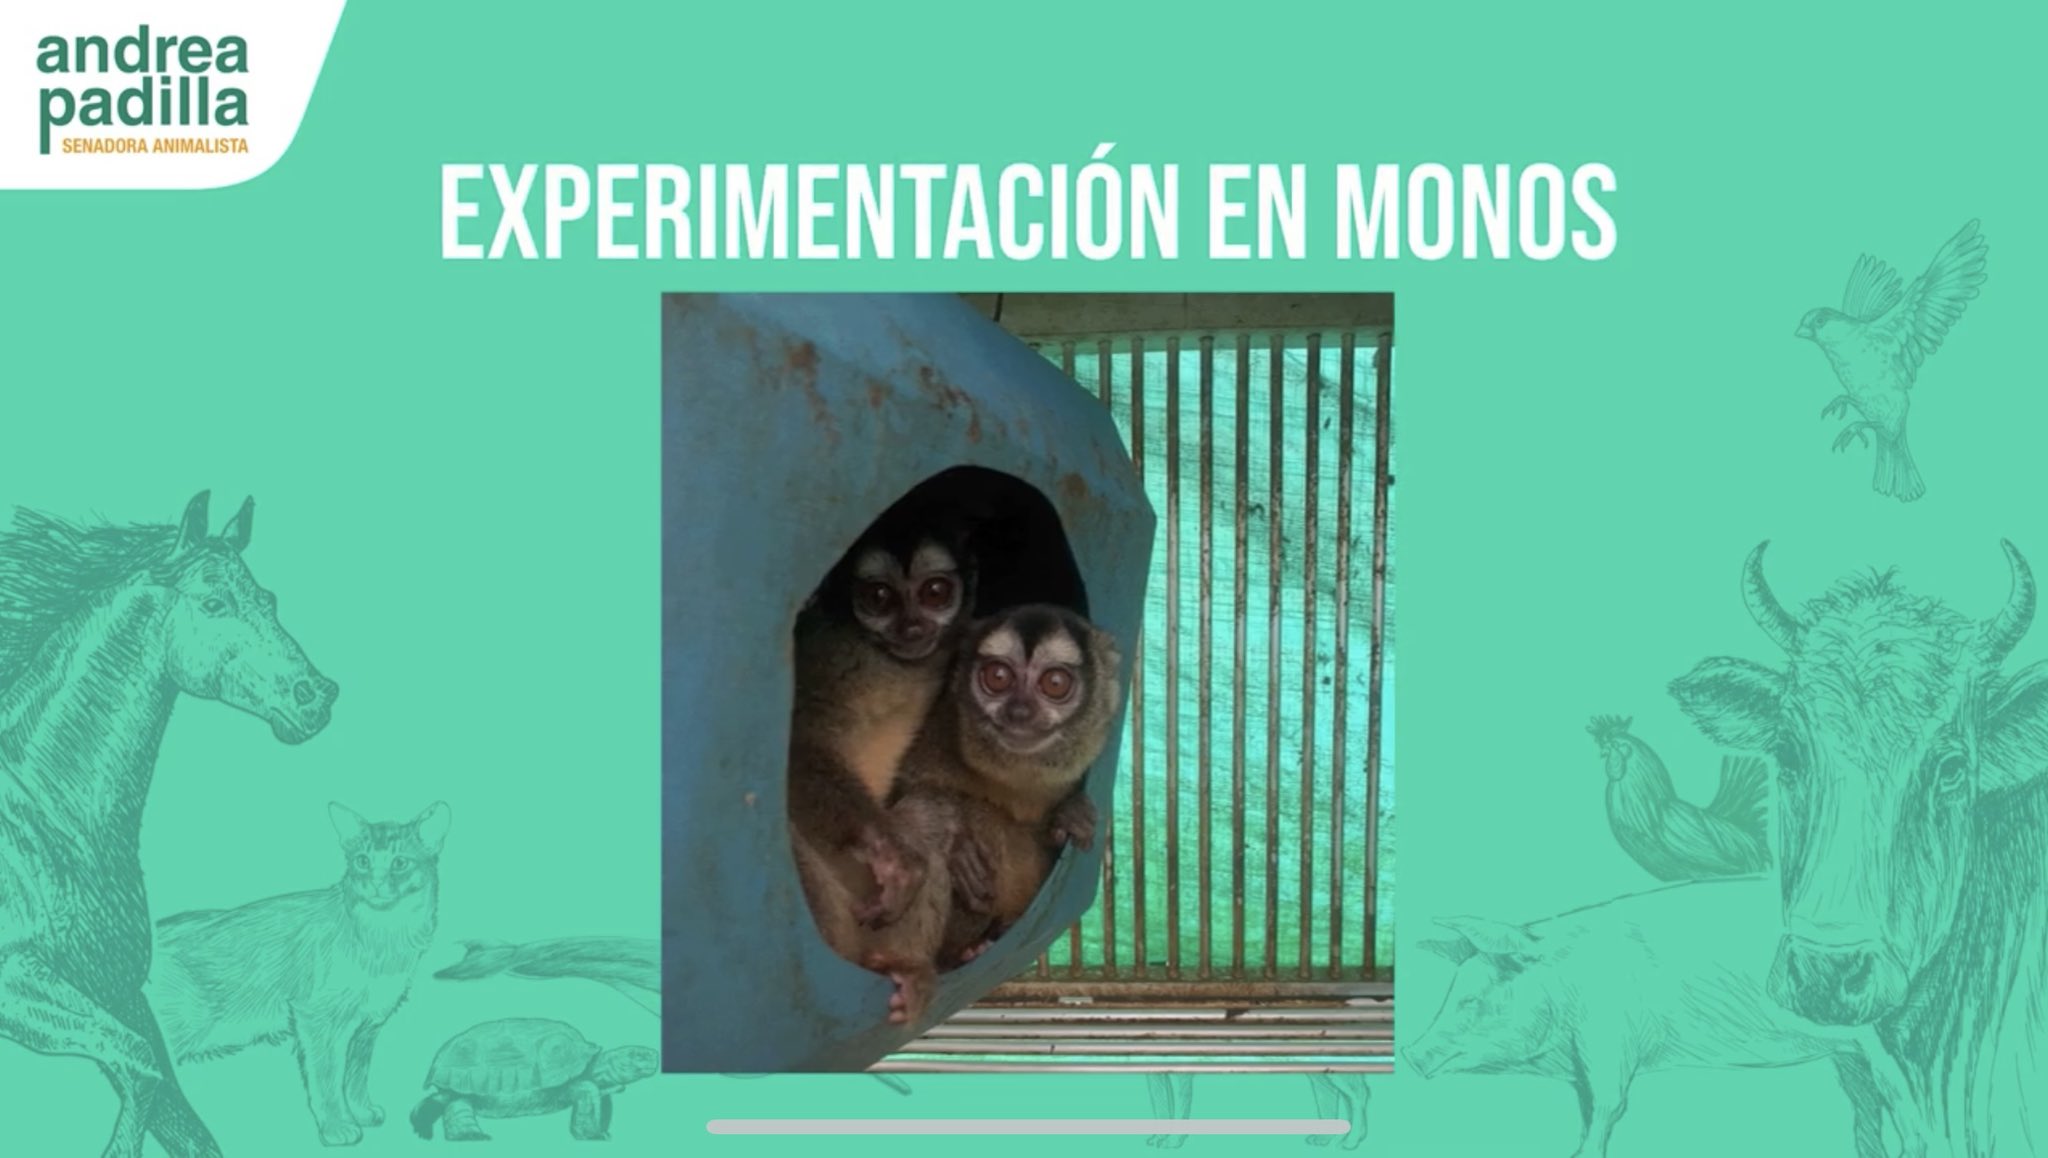 Laboratorios denunciados por maltrato animal quedaron al descubierto tras investigación y deberán entregar monos explotados 